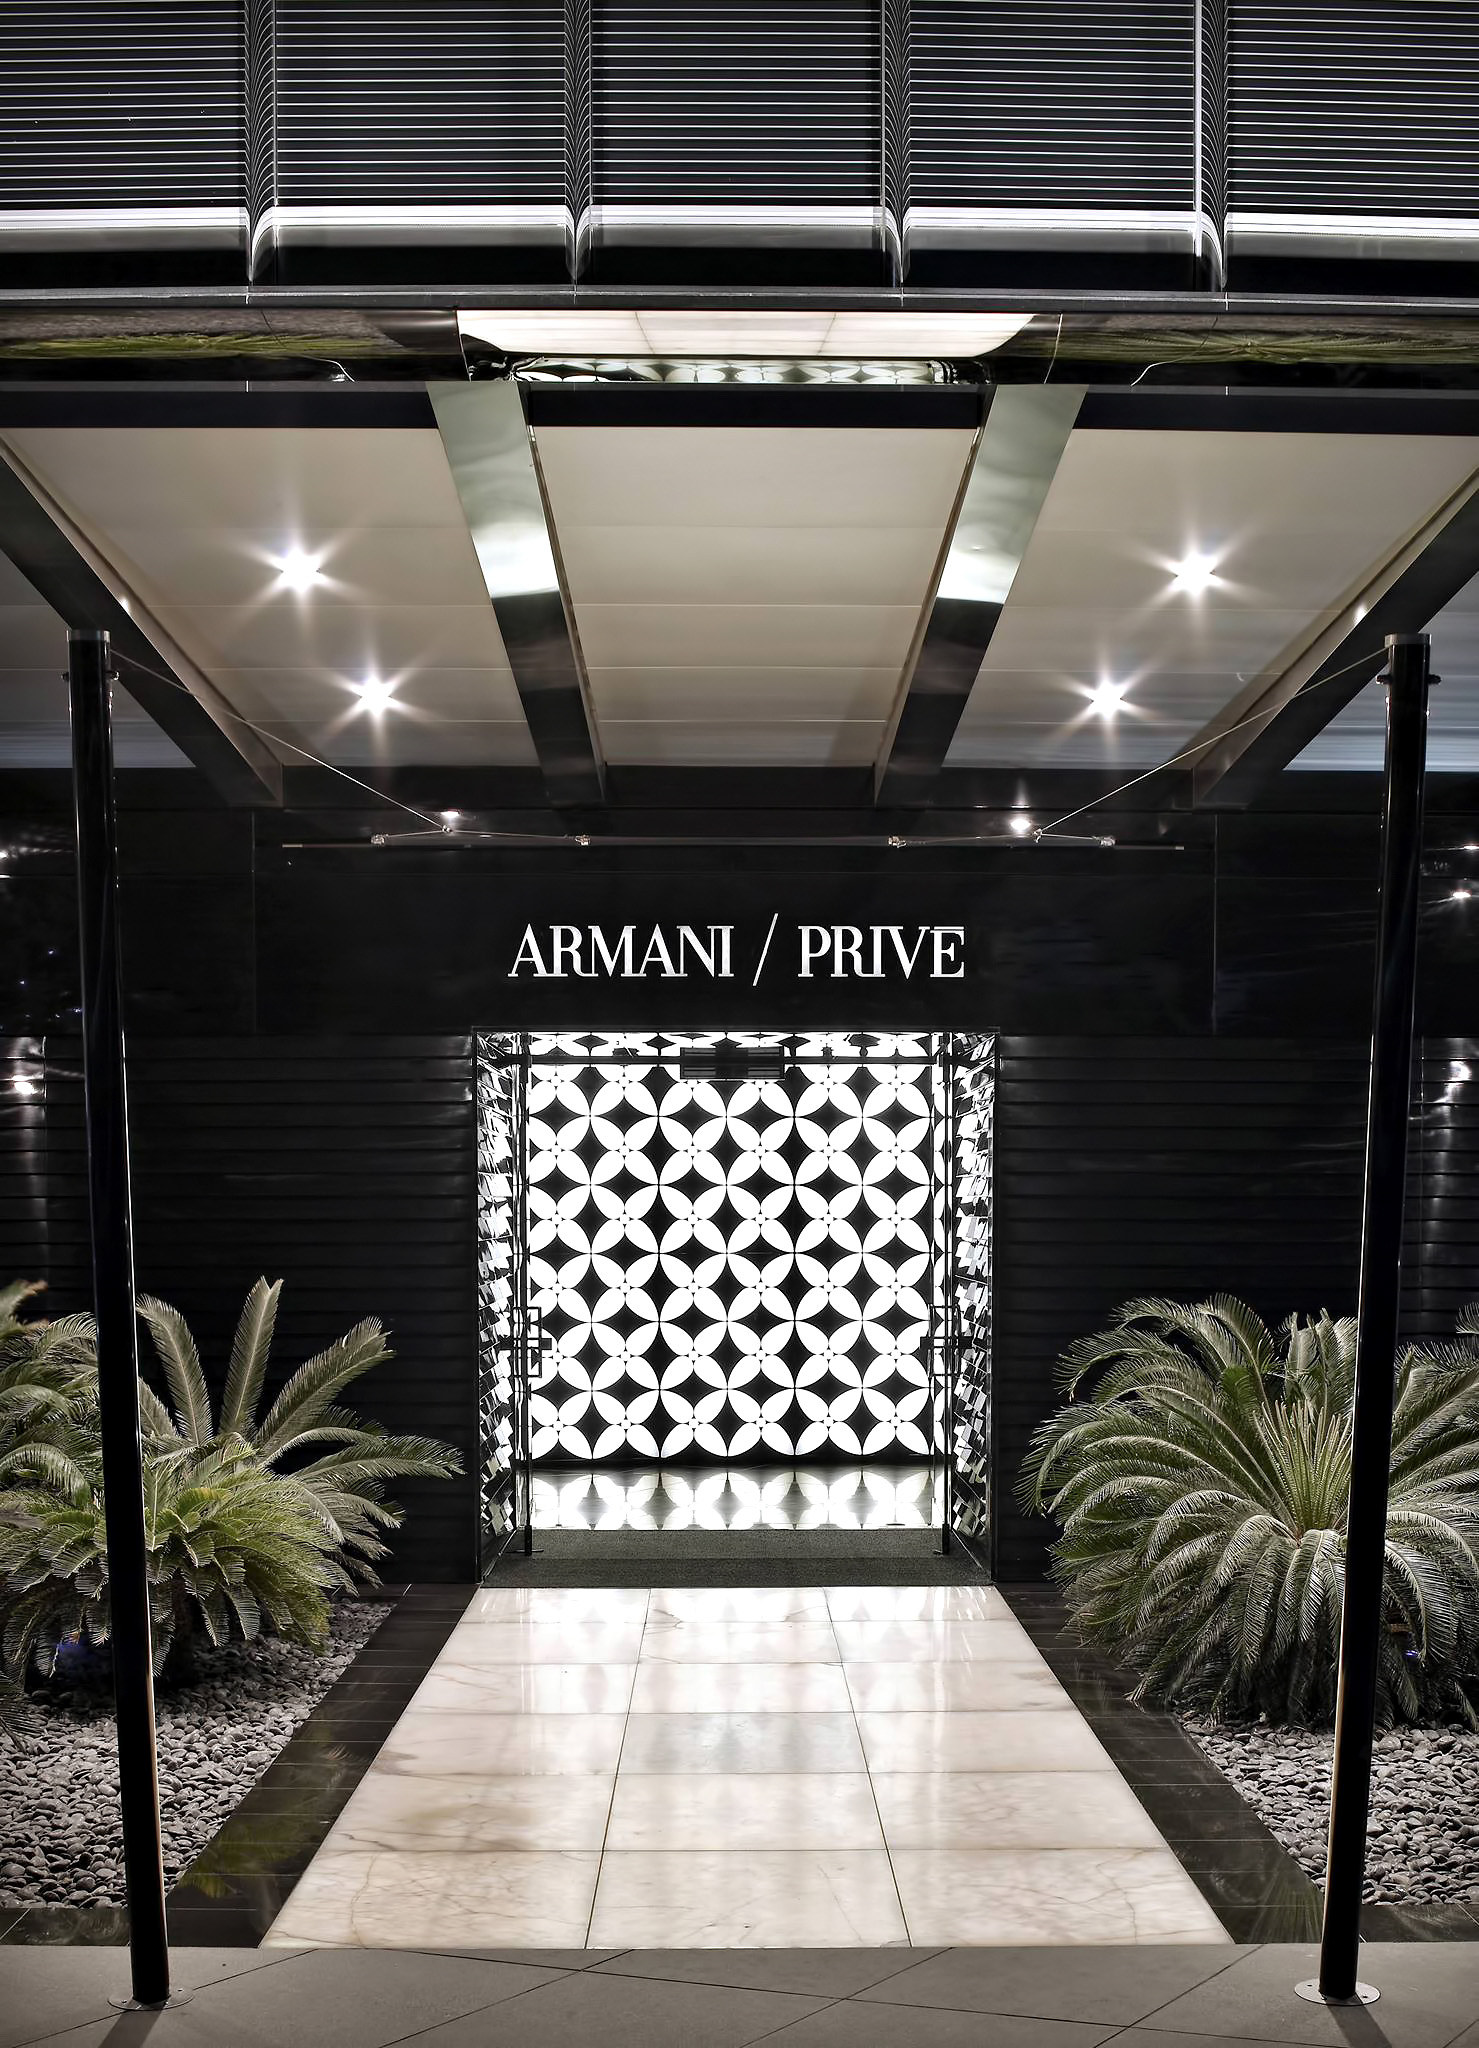 Armani Hotel Dubai - Burj Khalifa, Dubai, UAE - Armani Prive Night Club Entrance